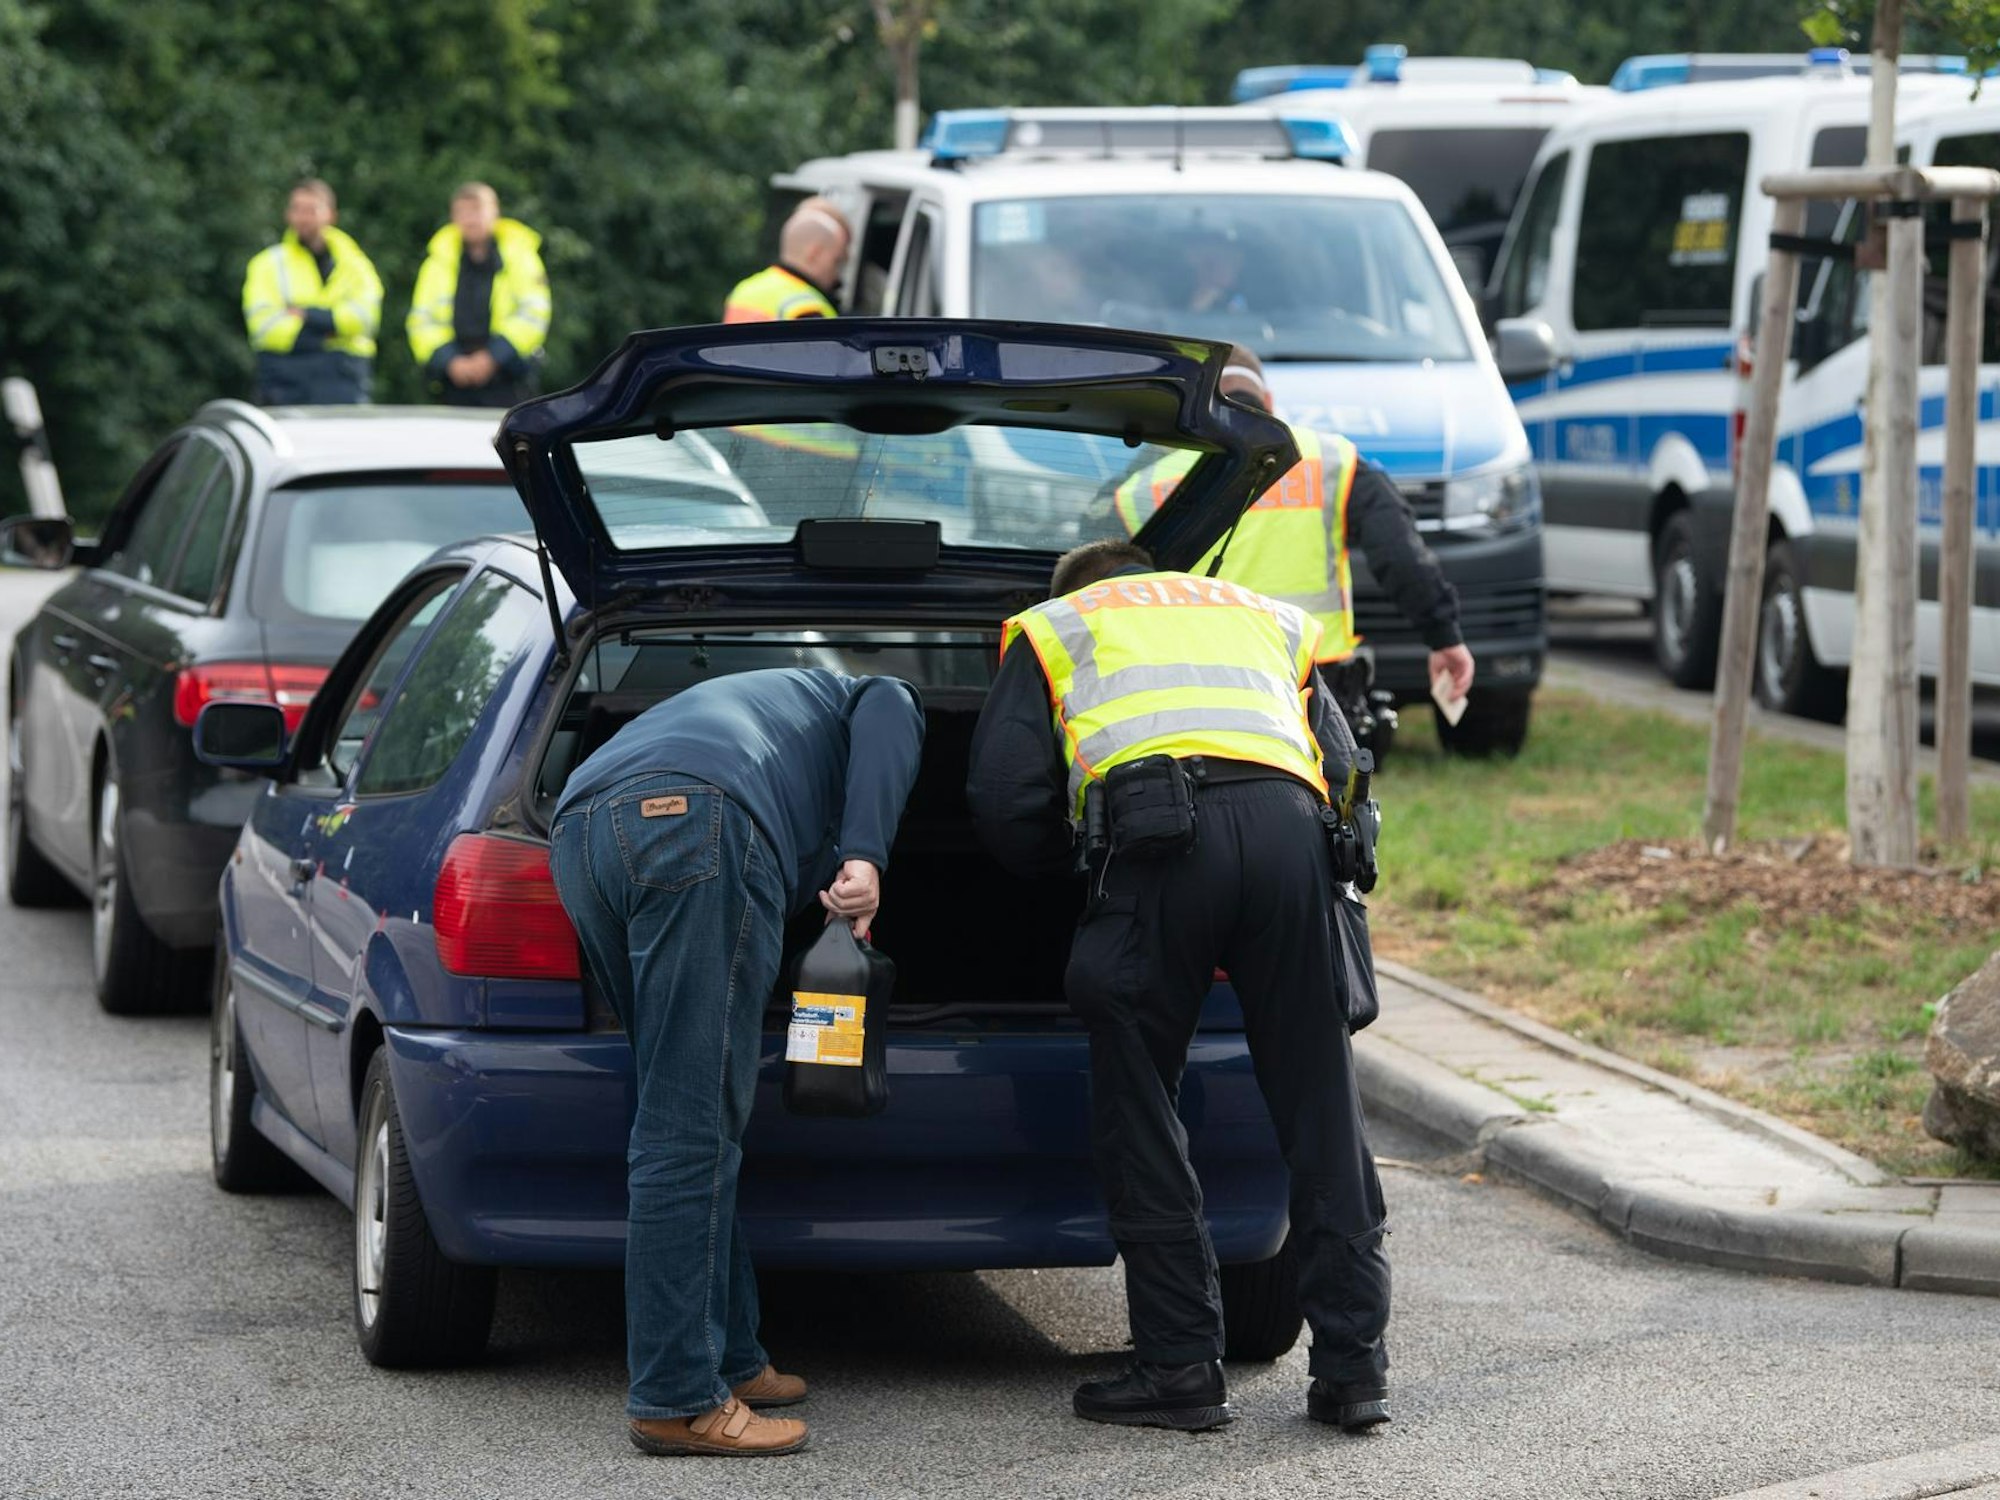 Polizeikräfte durchsuchen den Kofferraum eines Pkw.